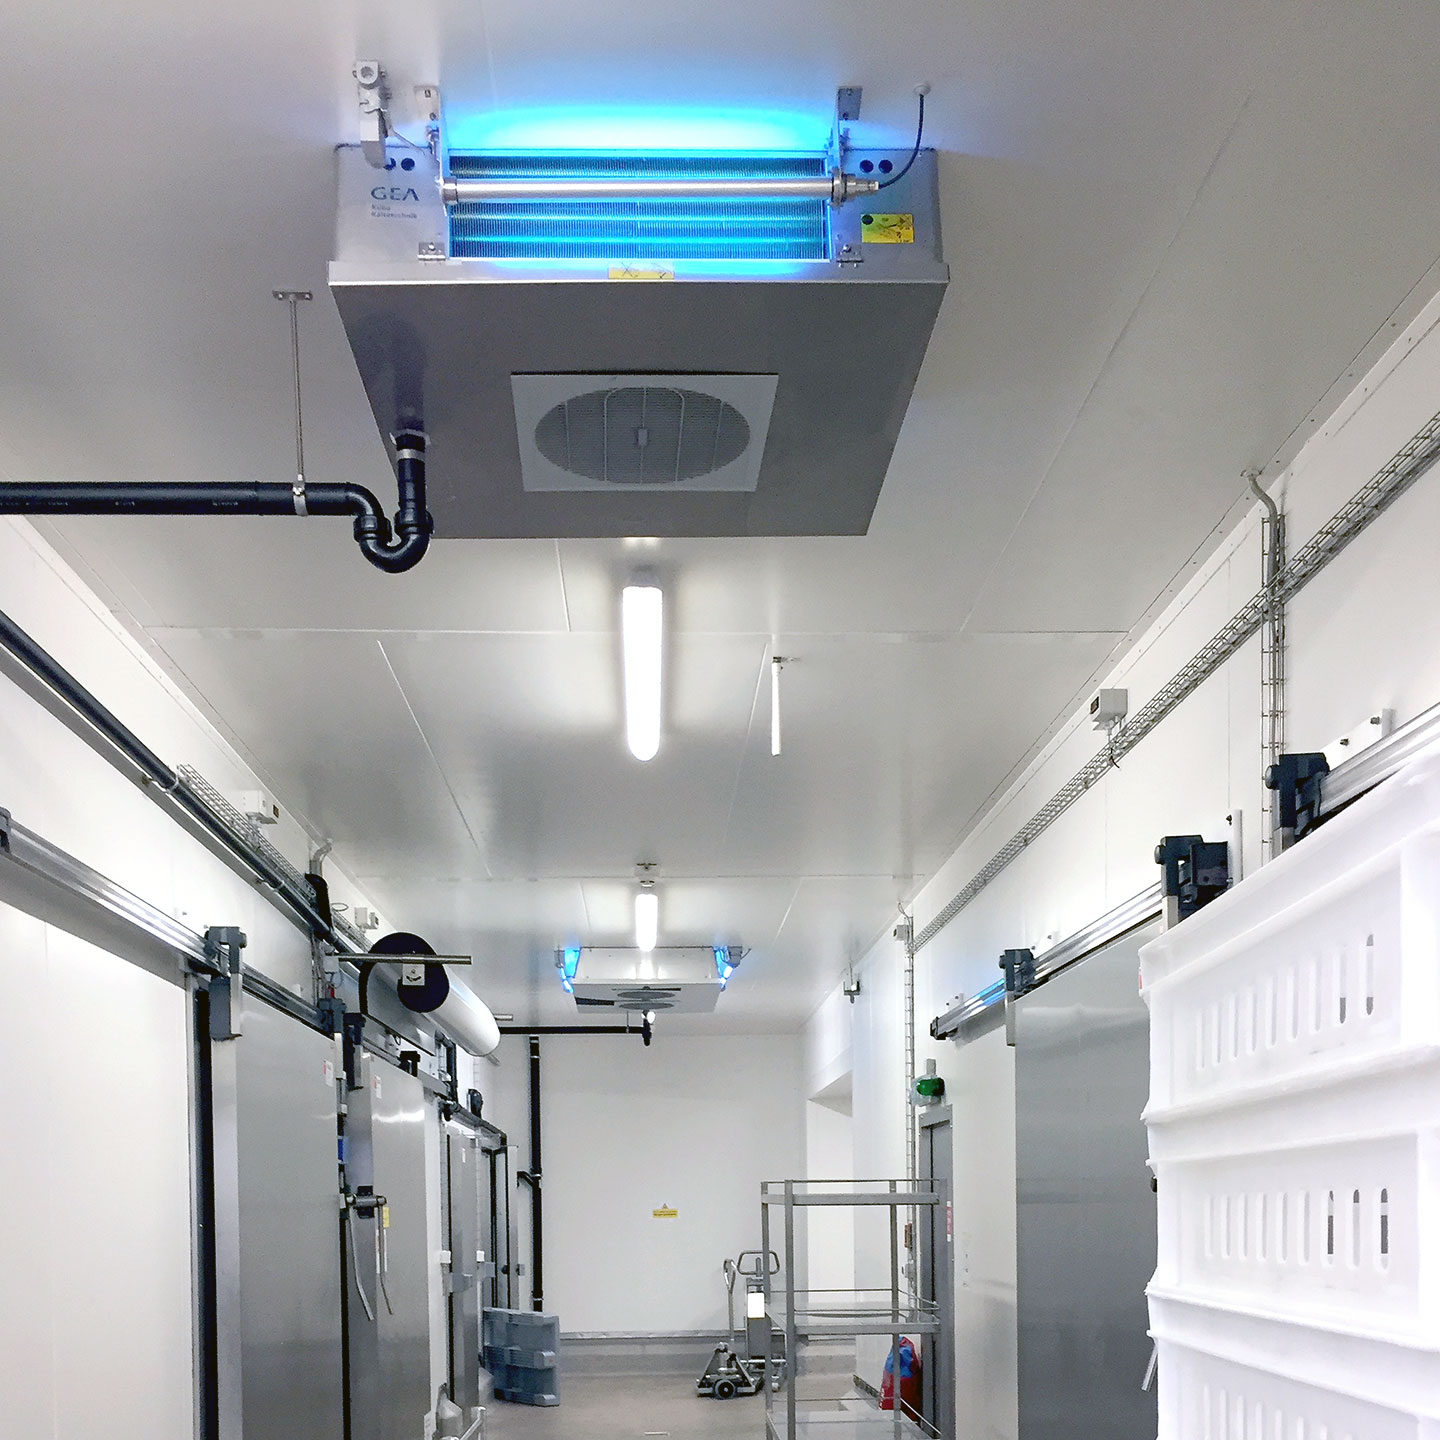 Höchster Hygienestandard durch UV / UVC Installationen in Verdampfer und Hygiene Kühler bei der Produktion